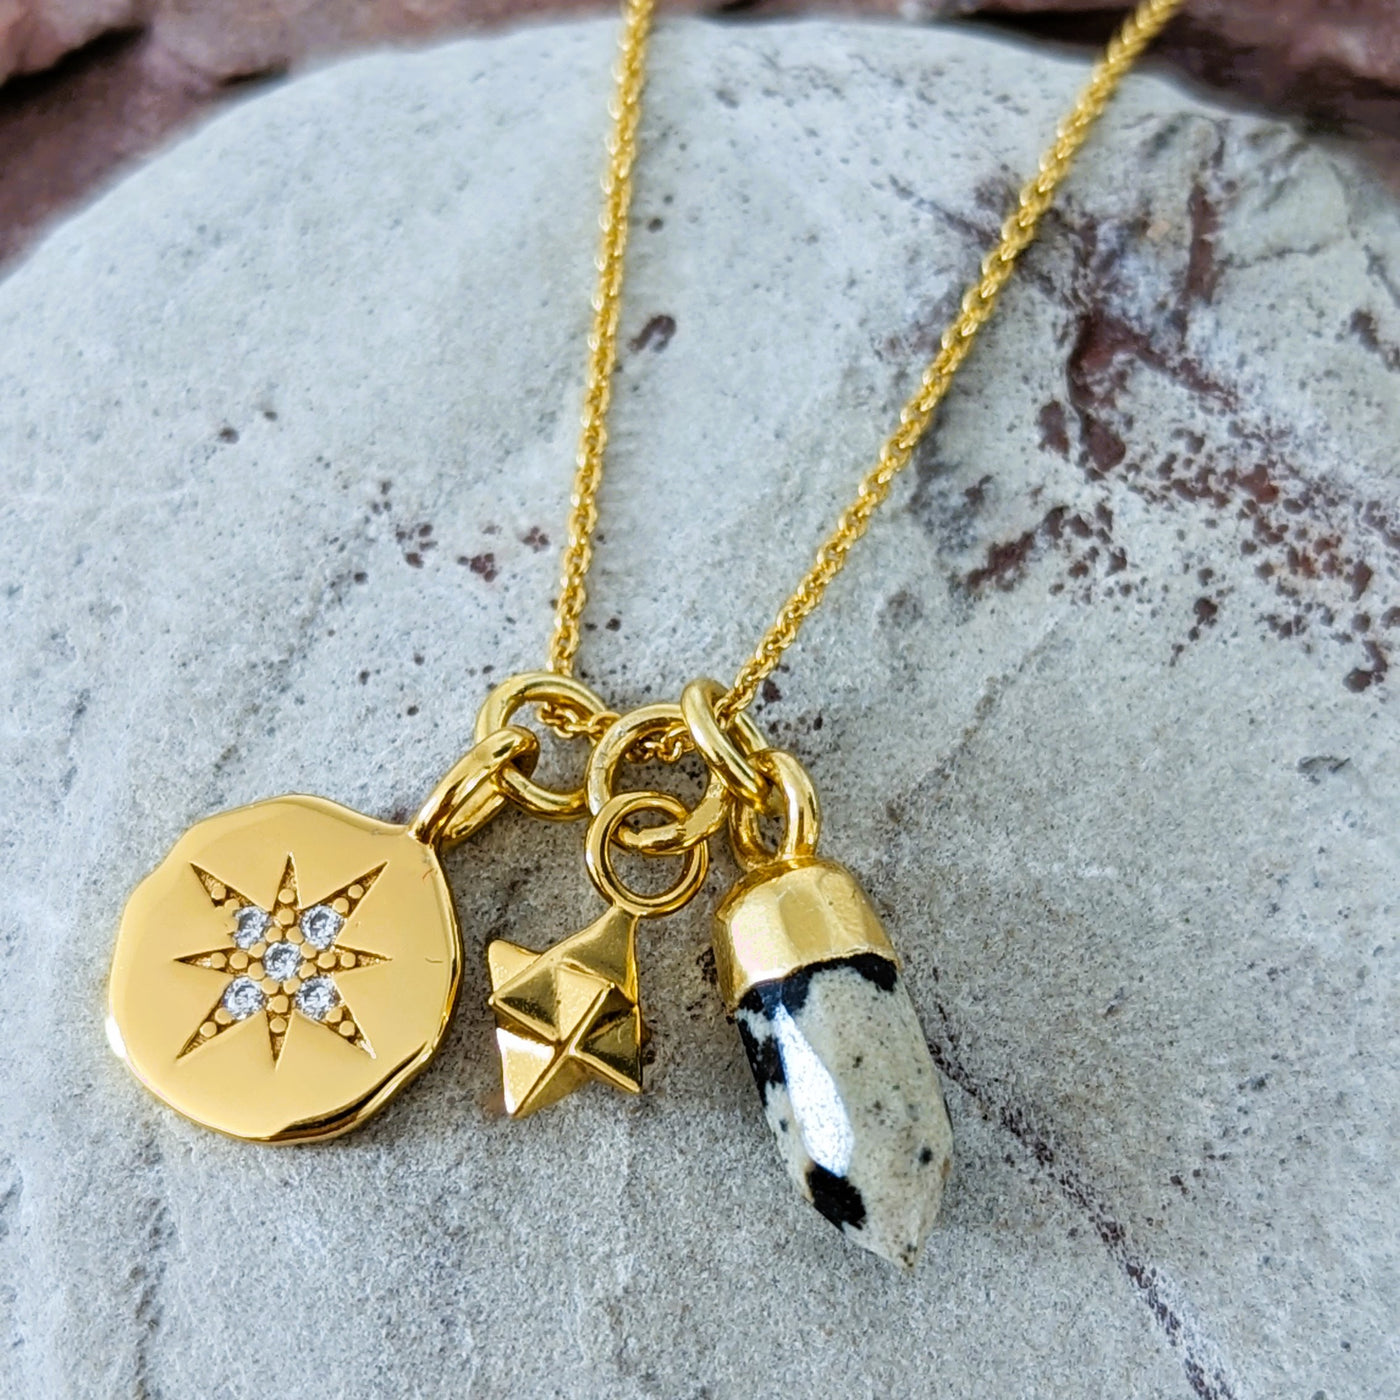 gold trio charm dalmatian jasper pendant necklace 